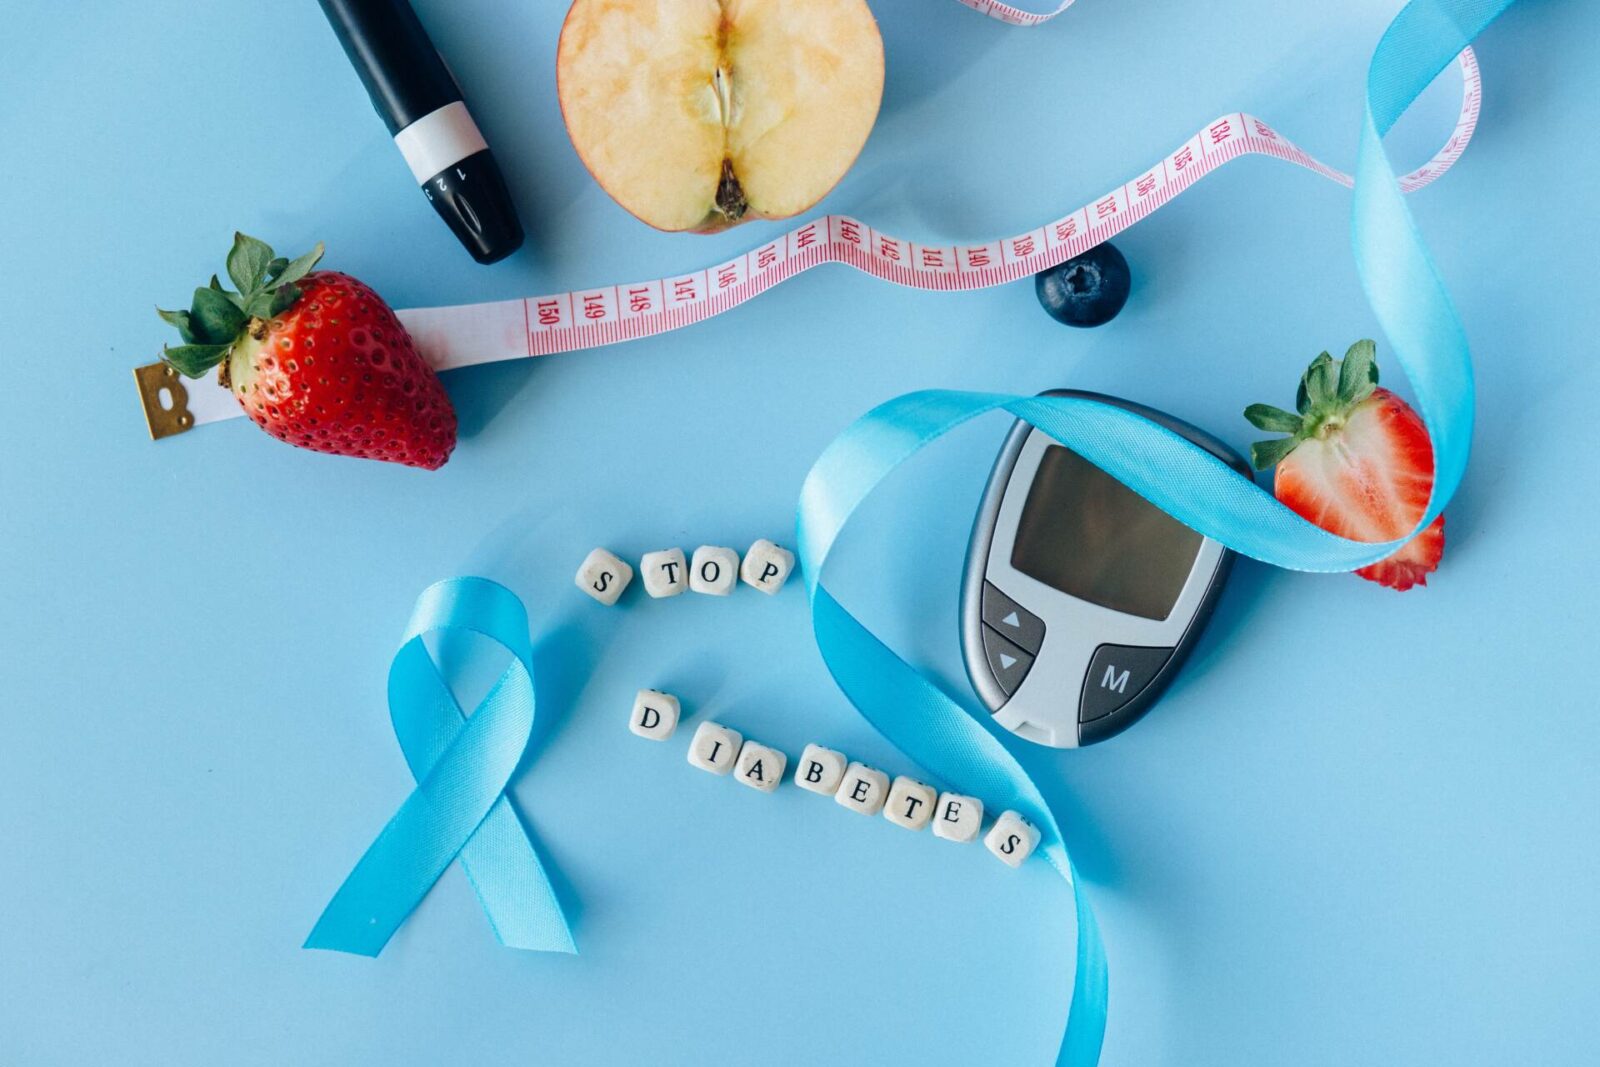 Nữ hộ sinh và Cuộc sống – Tham gia bảo hiểm nhân thọ khi mắc bệnh tiểu đường loại 2 [5 top tips]